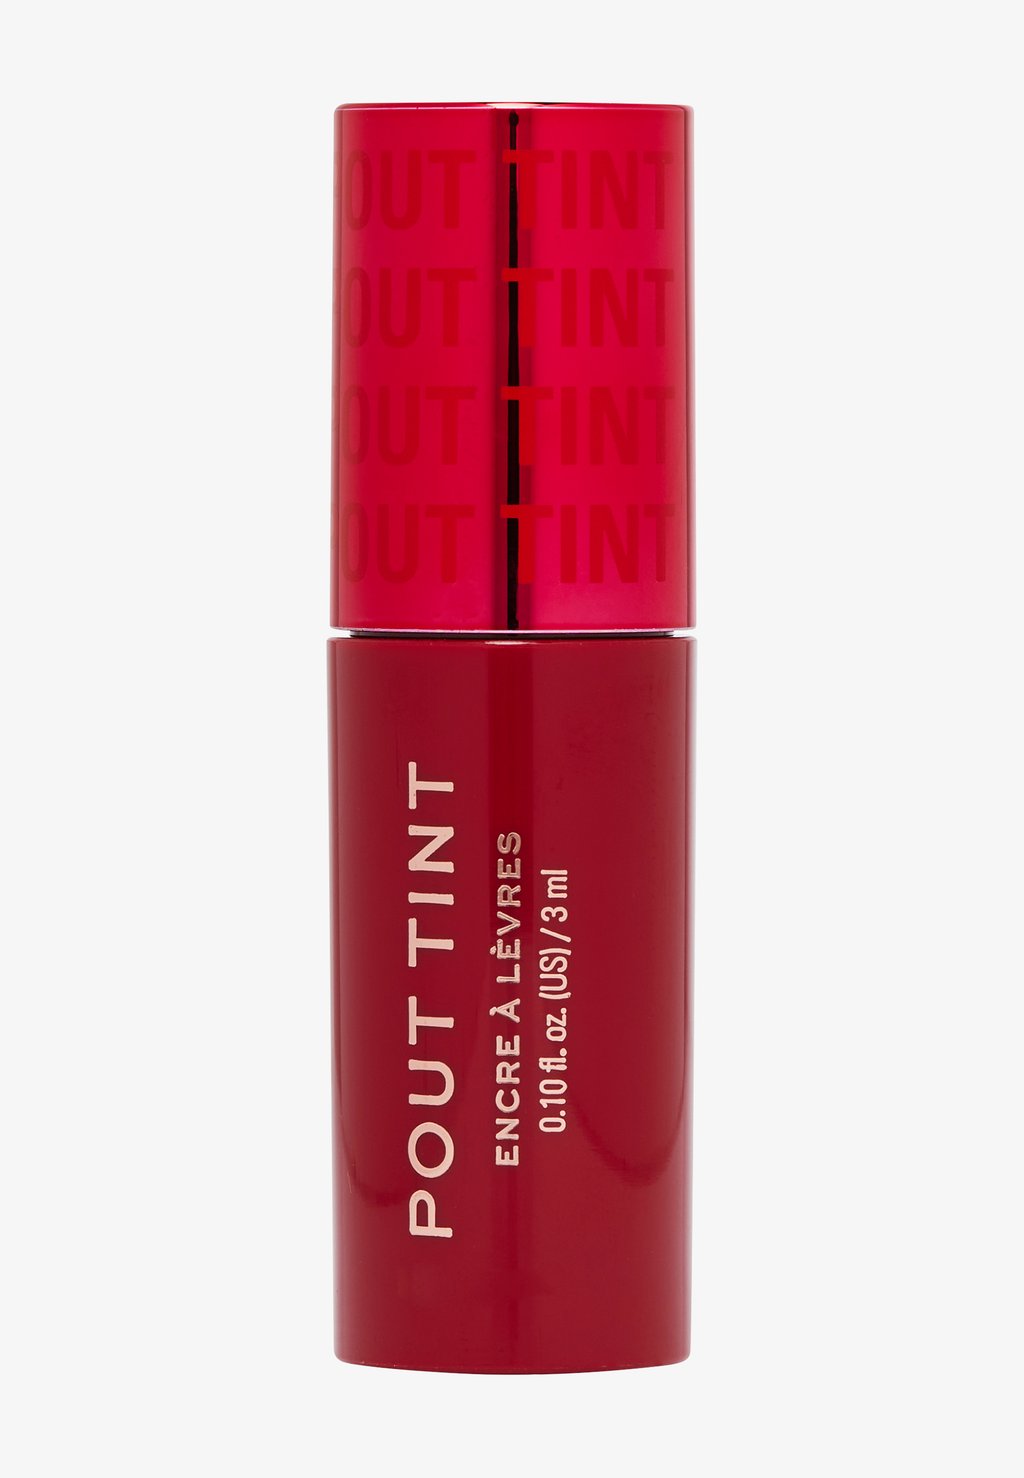 Тинт для губ и щек REVOLUTION POUT TINT Makeup Revolution, цвет sizzlin red